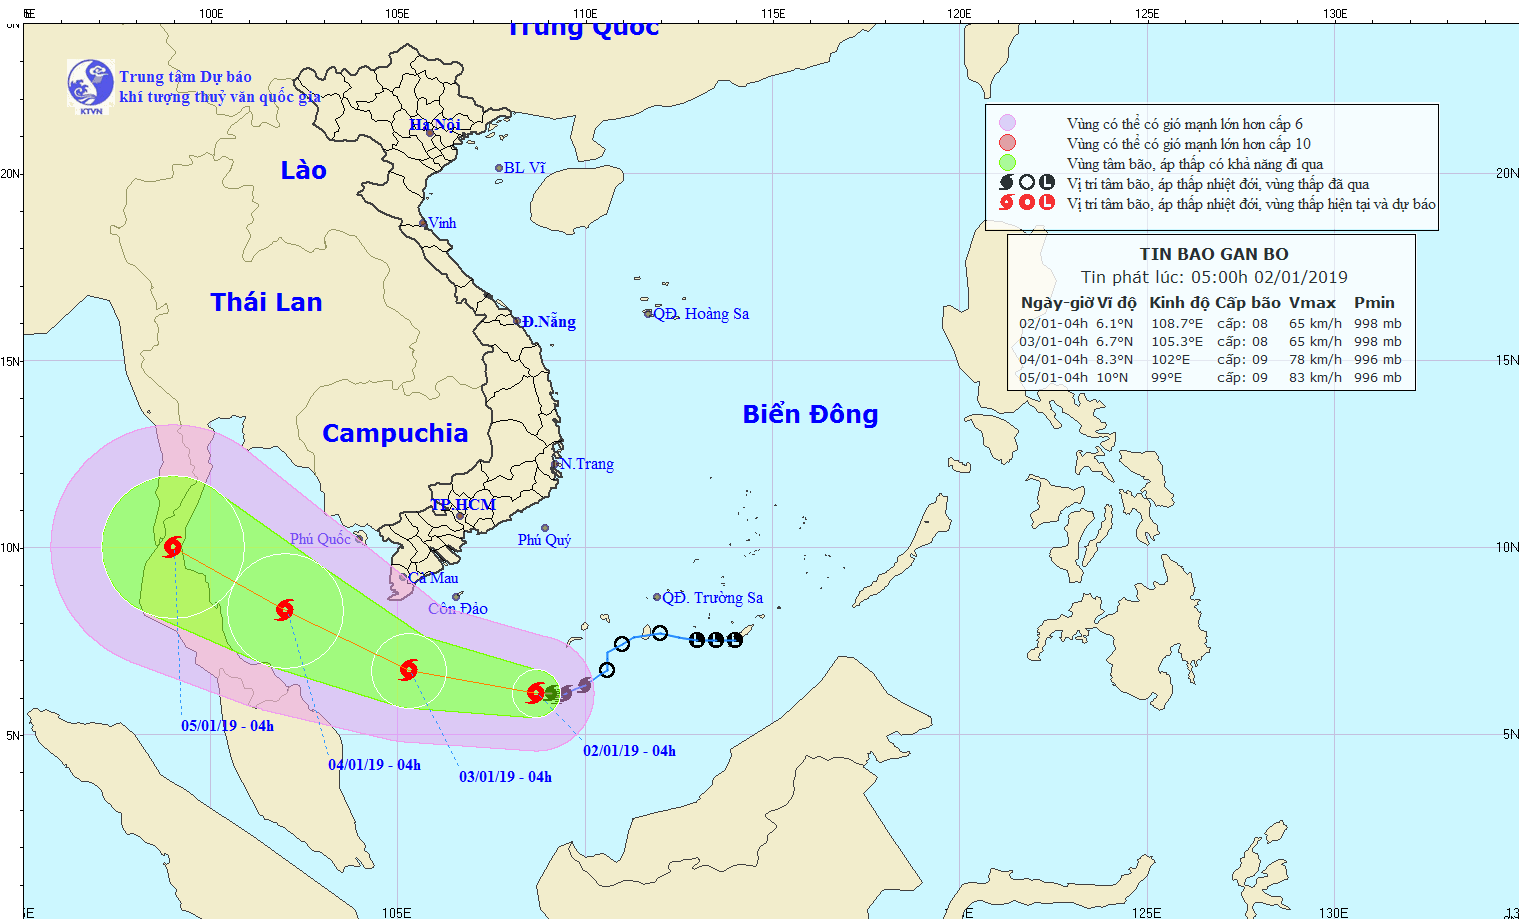 Bão số 1 mạnh cấp 8-10 còn cách các tỉnh Nam Bộ 460km